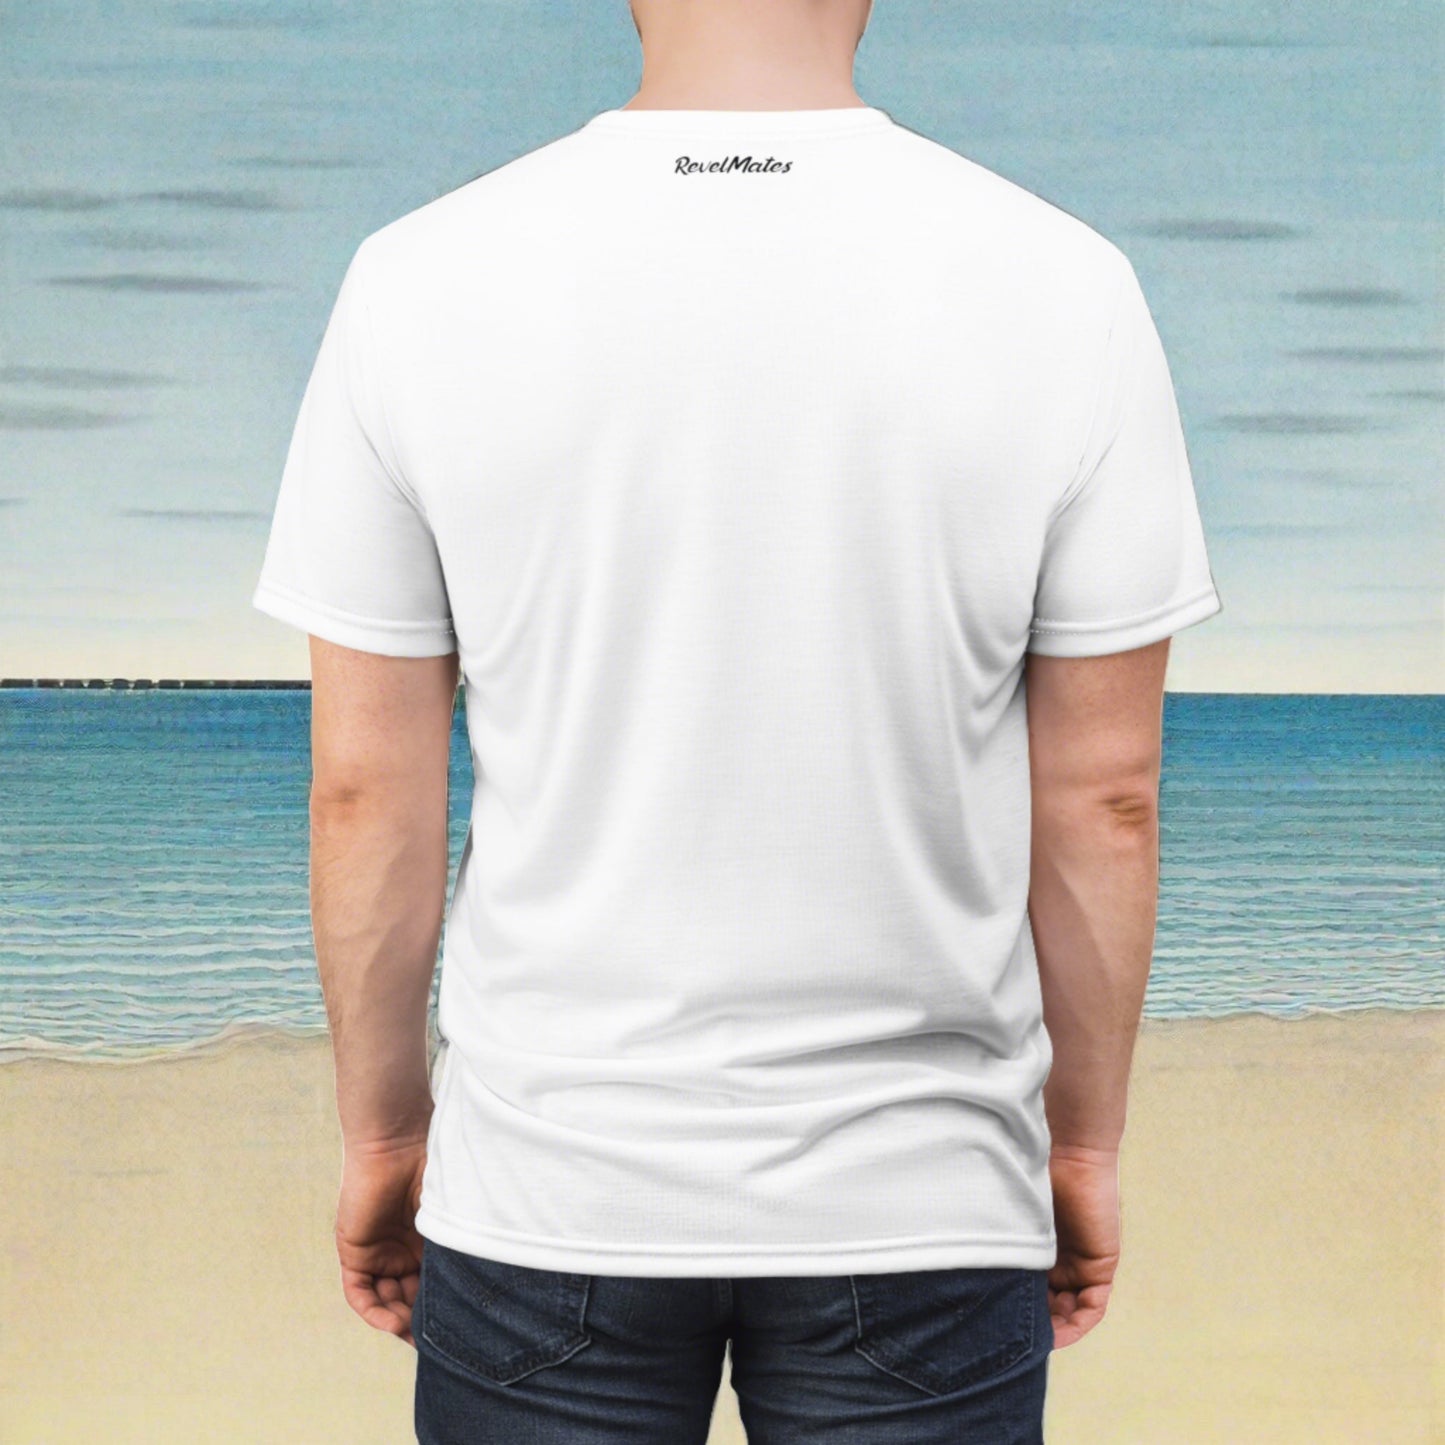 Unisex T-Shirt | All Over Print Tee | White & Black RevelMates Design